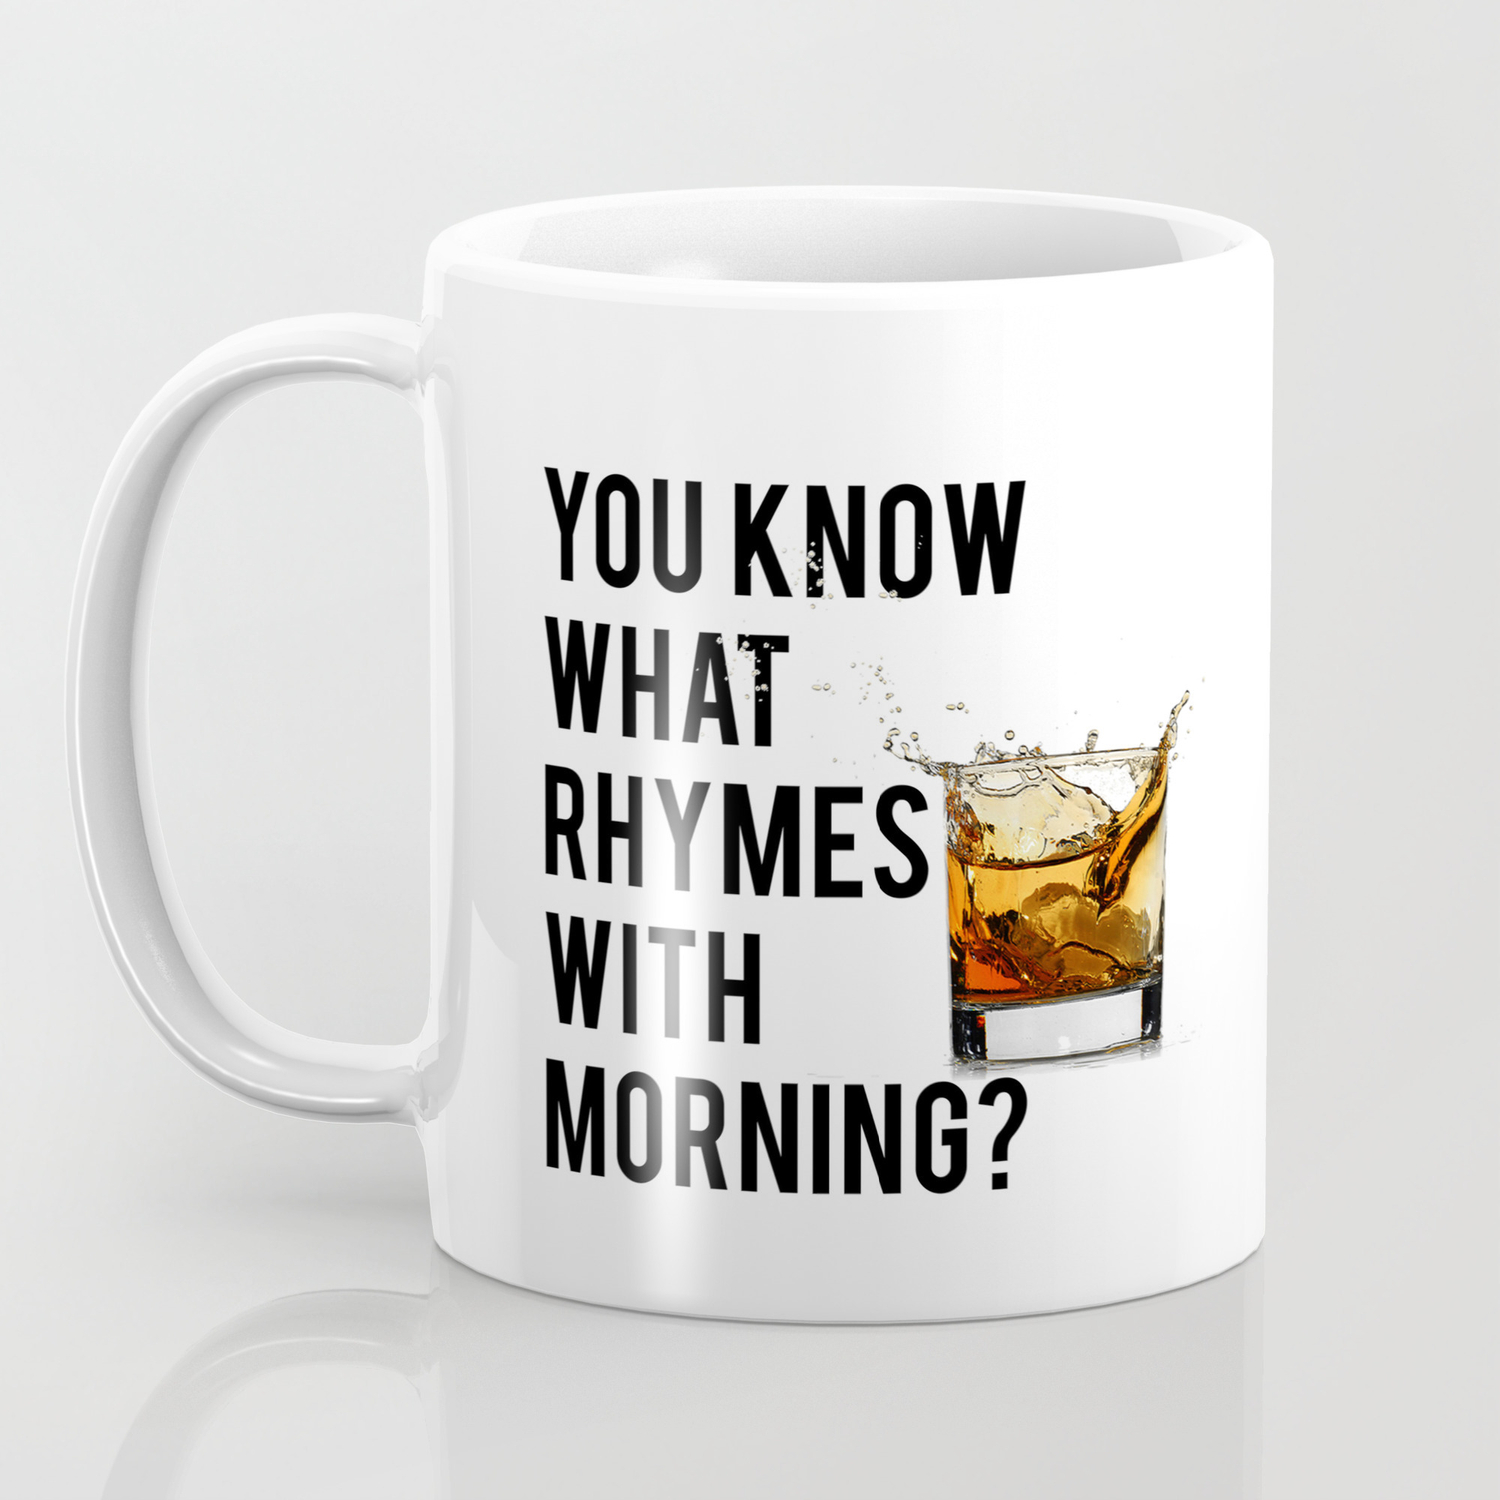 Funny Coffee Mug Funny Whiskey Gift Funny Saying Coffee Mug 